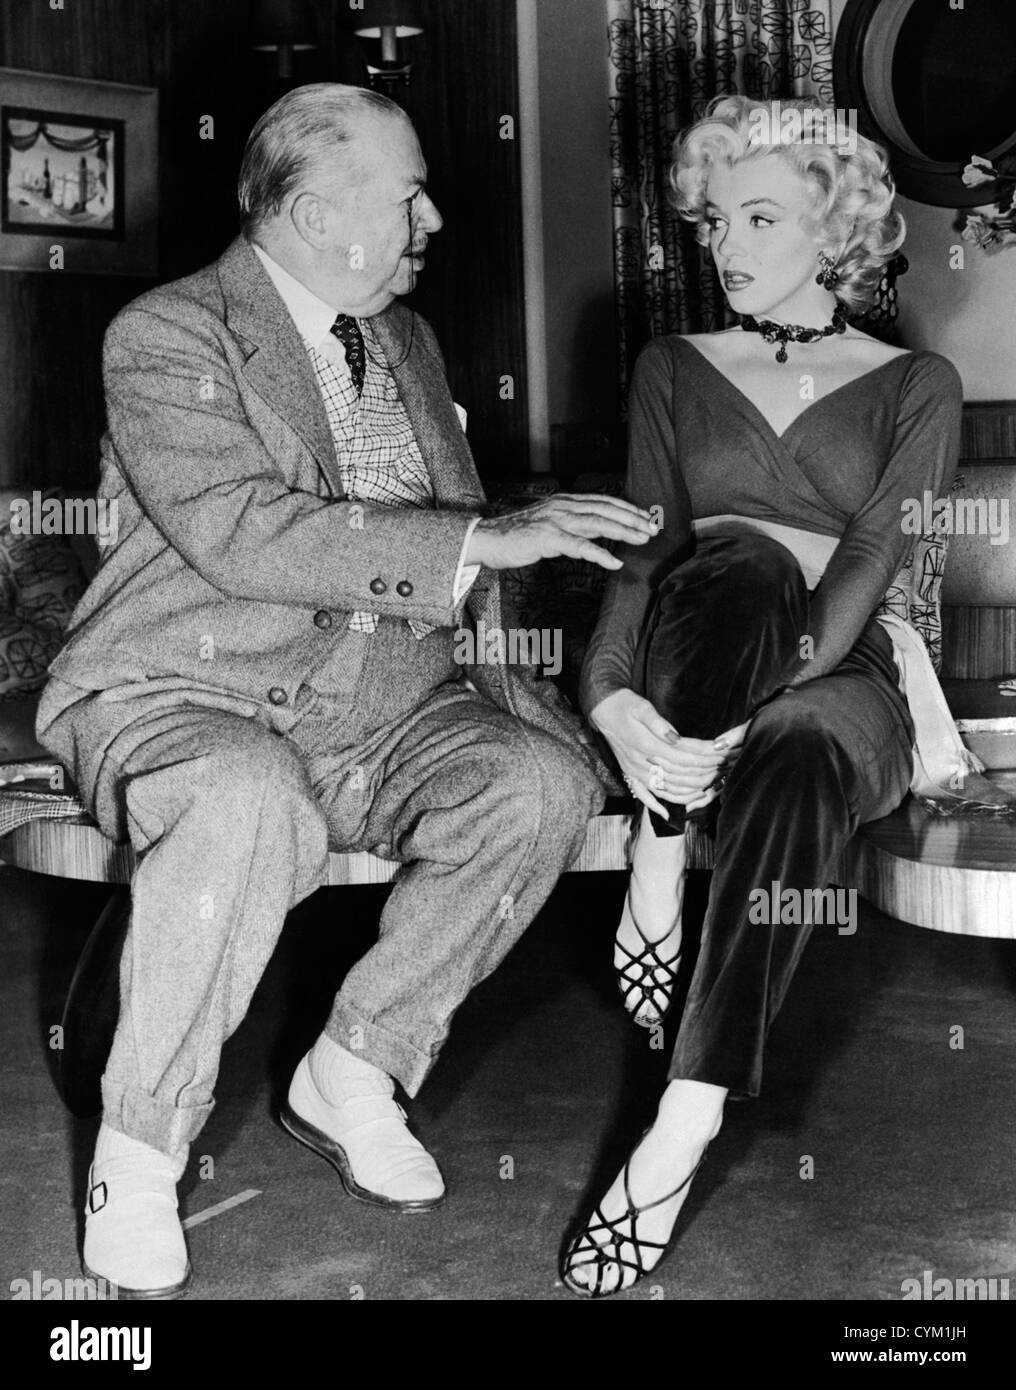 Hommes préfèrent les blondes Marilyn Monroe 1953 Réalisateur : Howard Hawks Banque D'Images